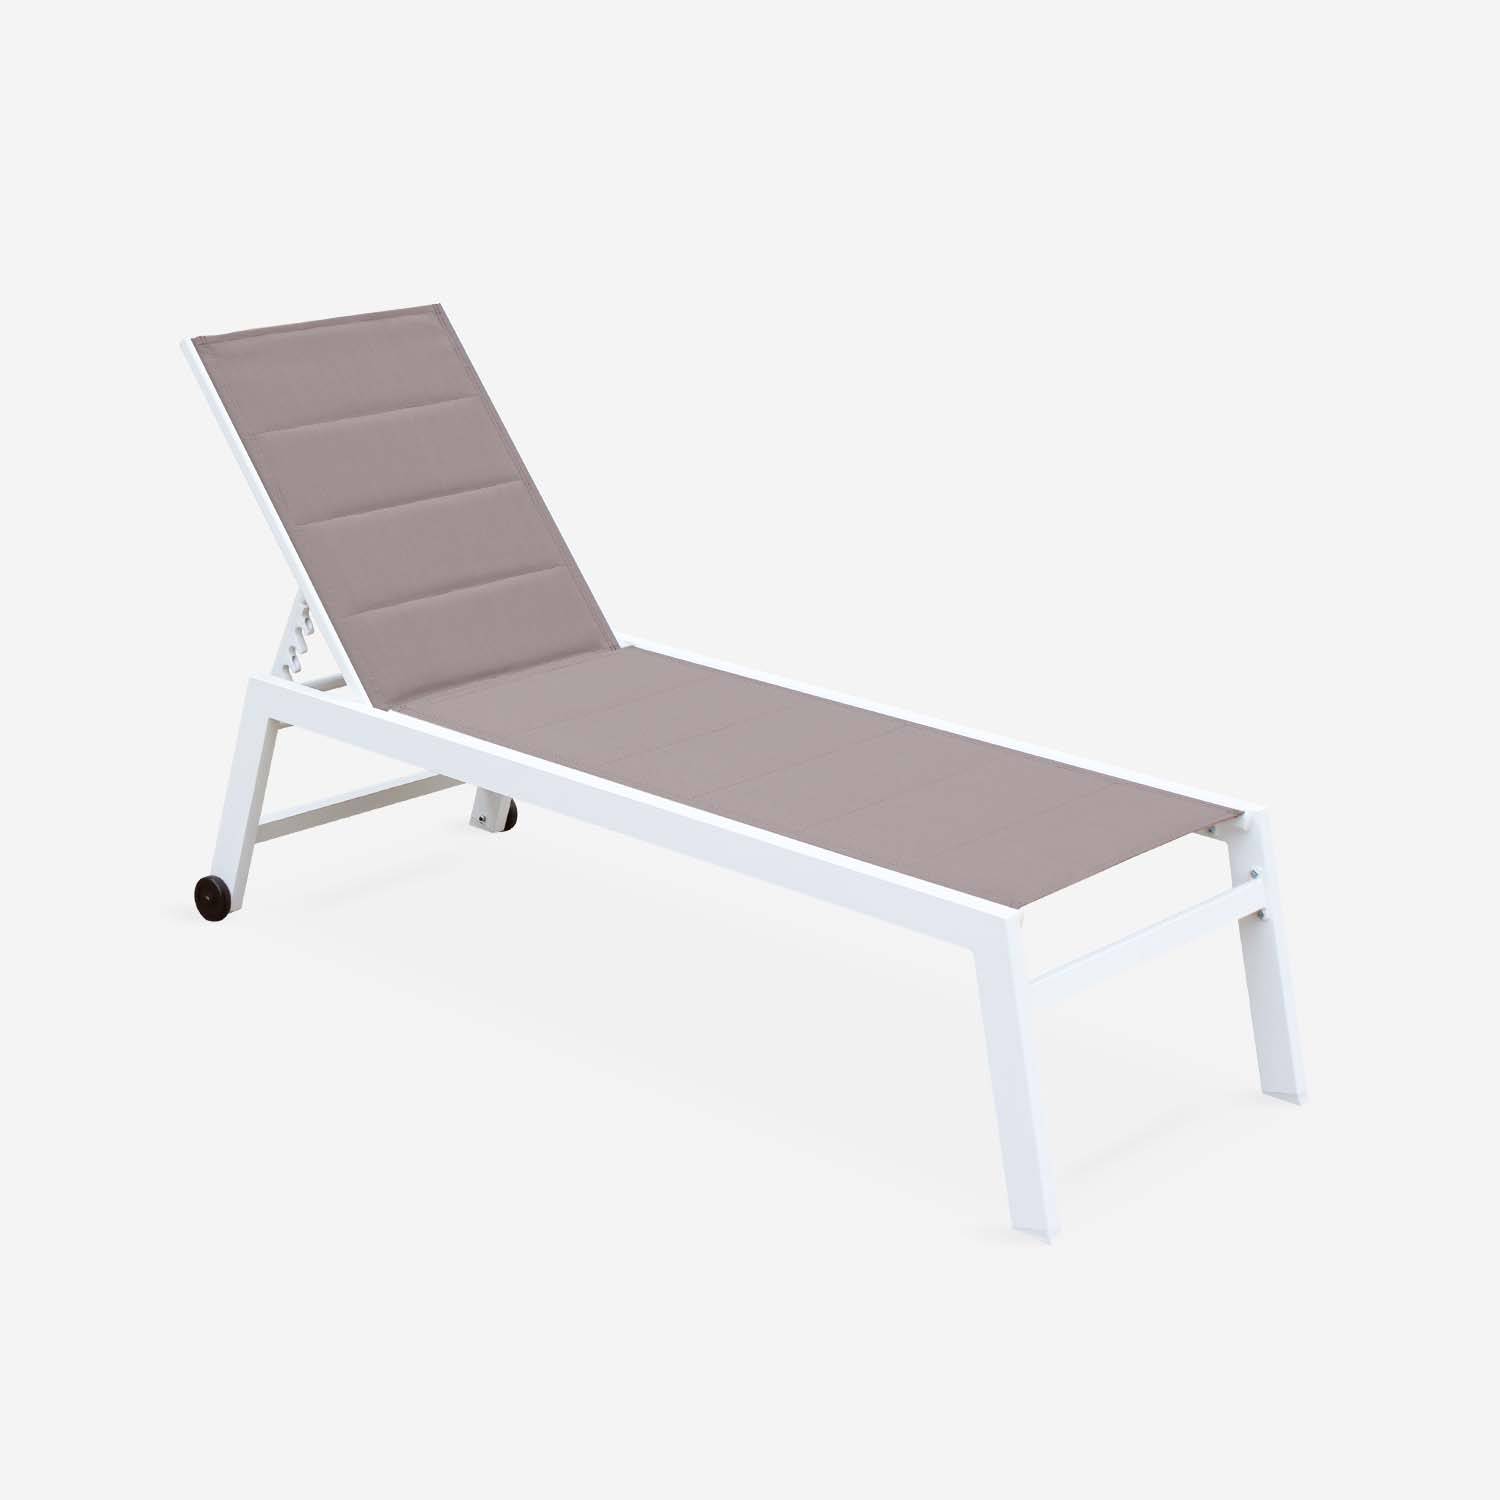 Sonnenliege - Solis - Liegestuhl aus gestepptem Textilene mit 6 Positionen aus Textilene und Aluminium, weißes Gestell, taupefarbenes Textilene Photo3